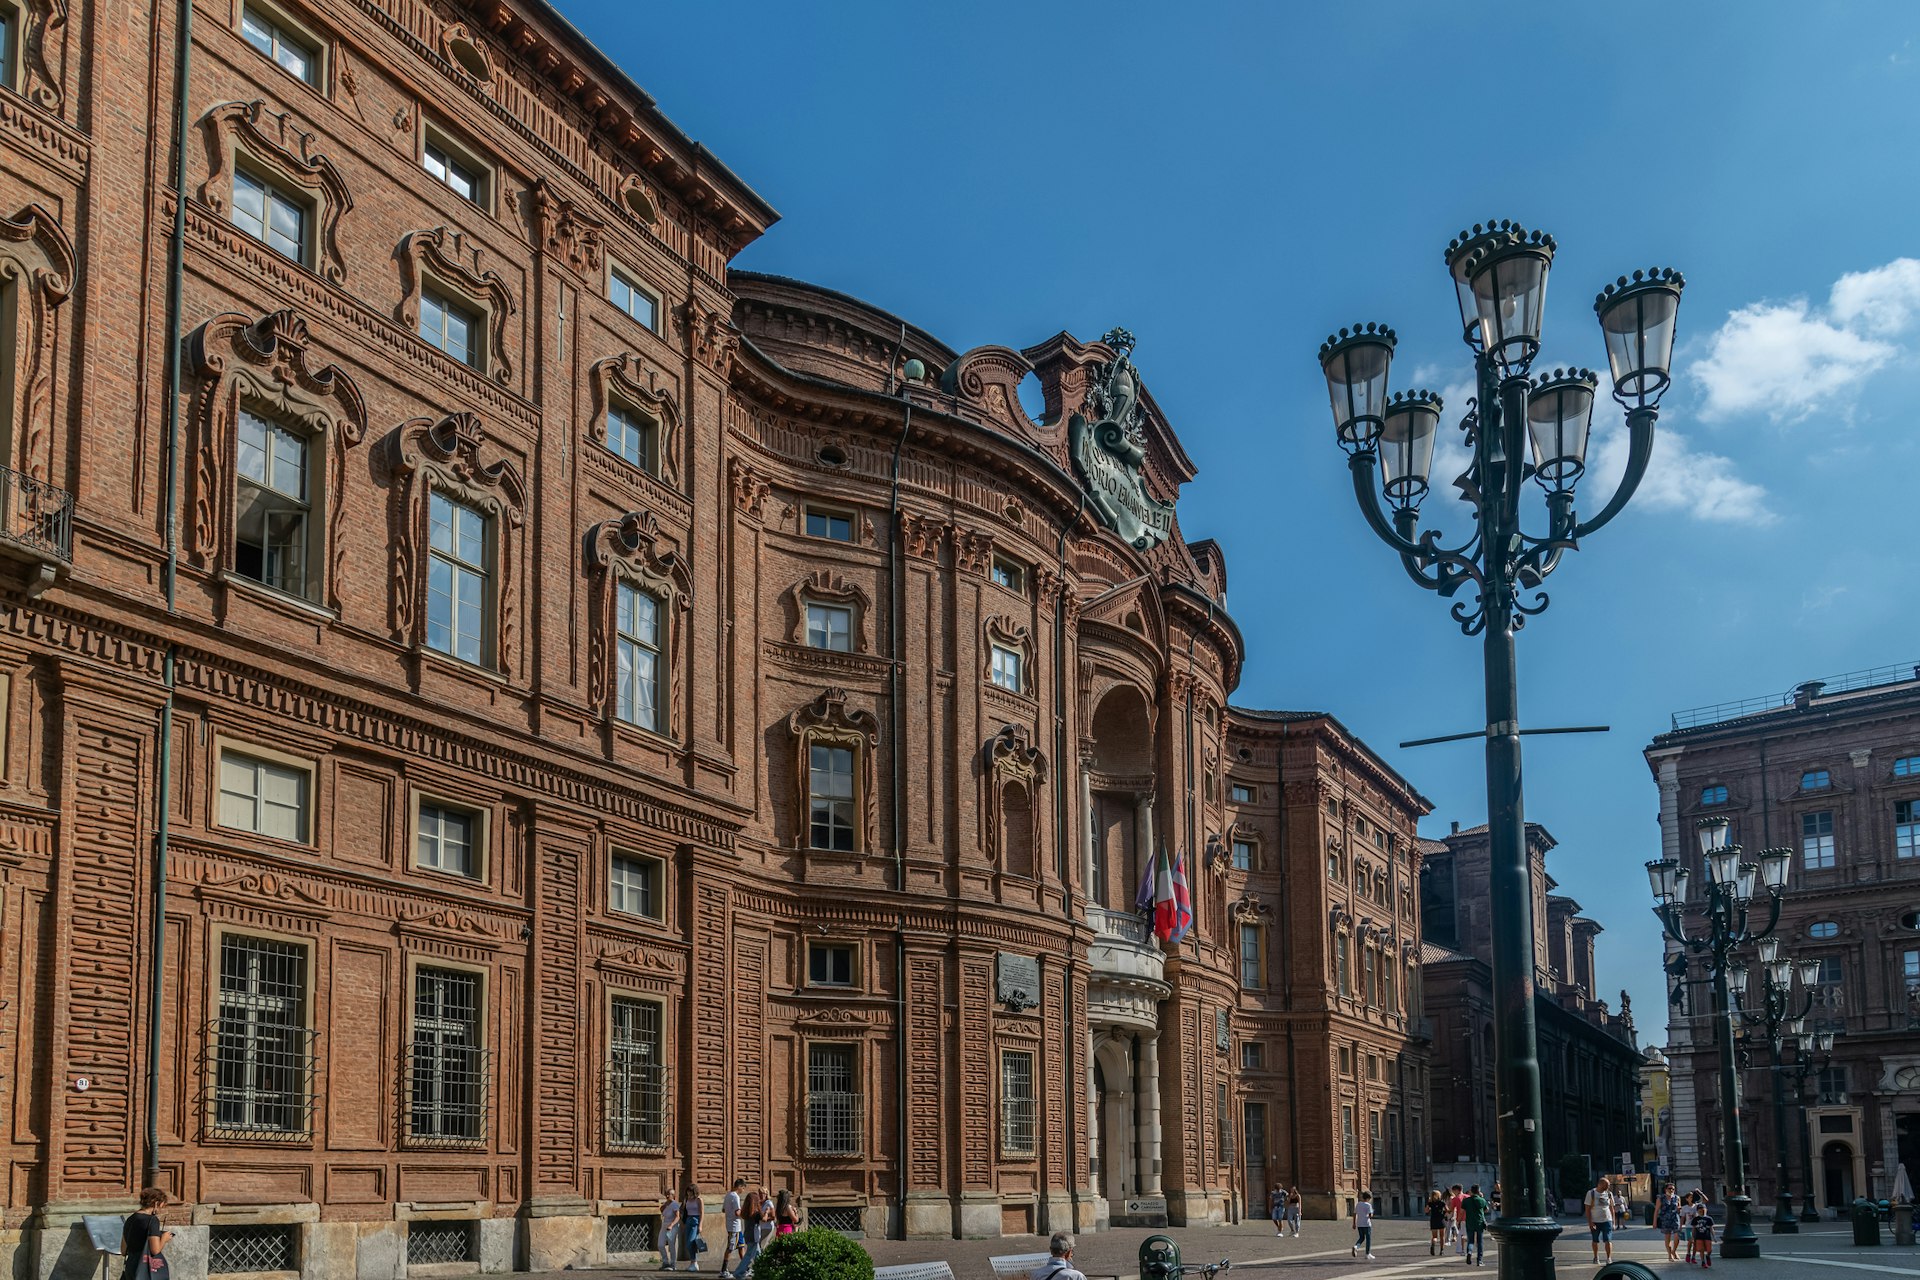 The exterior of the Museo Nazionale del Risorgimento Italiano in Turin